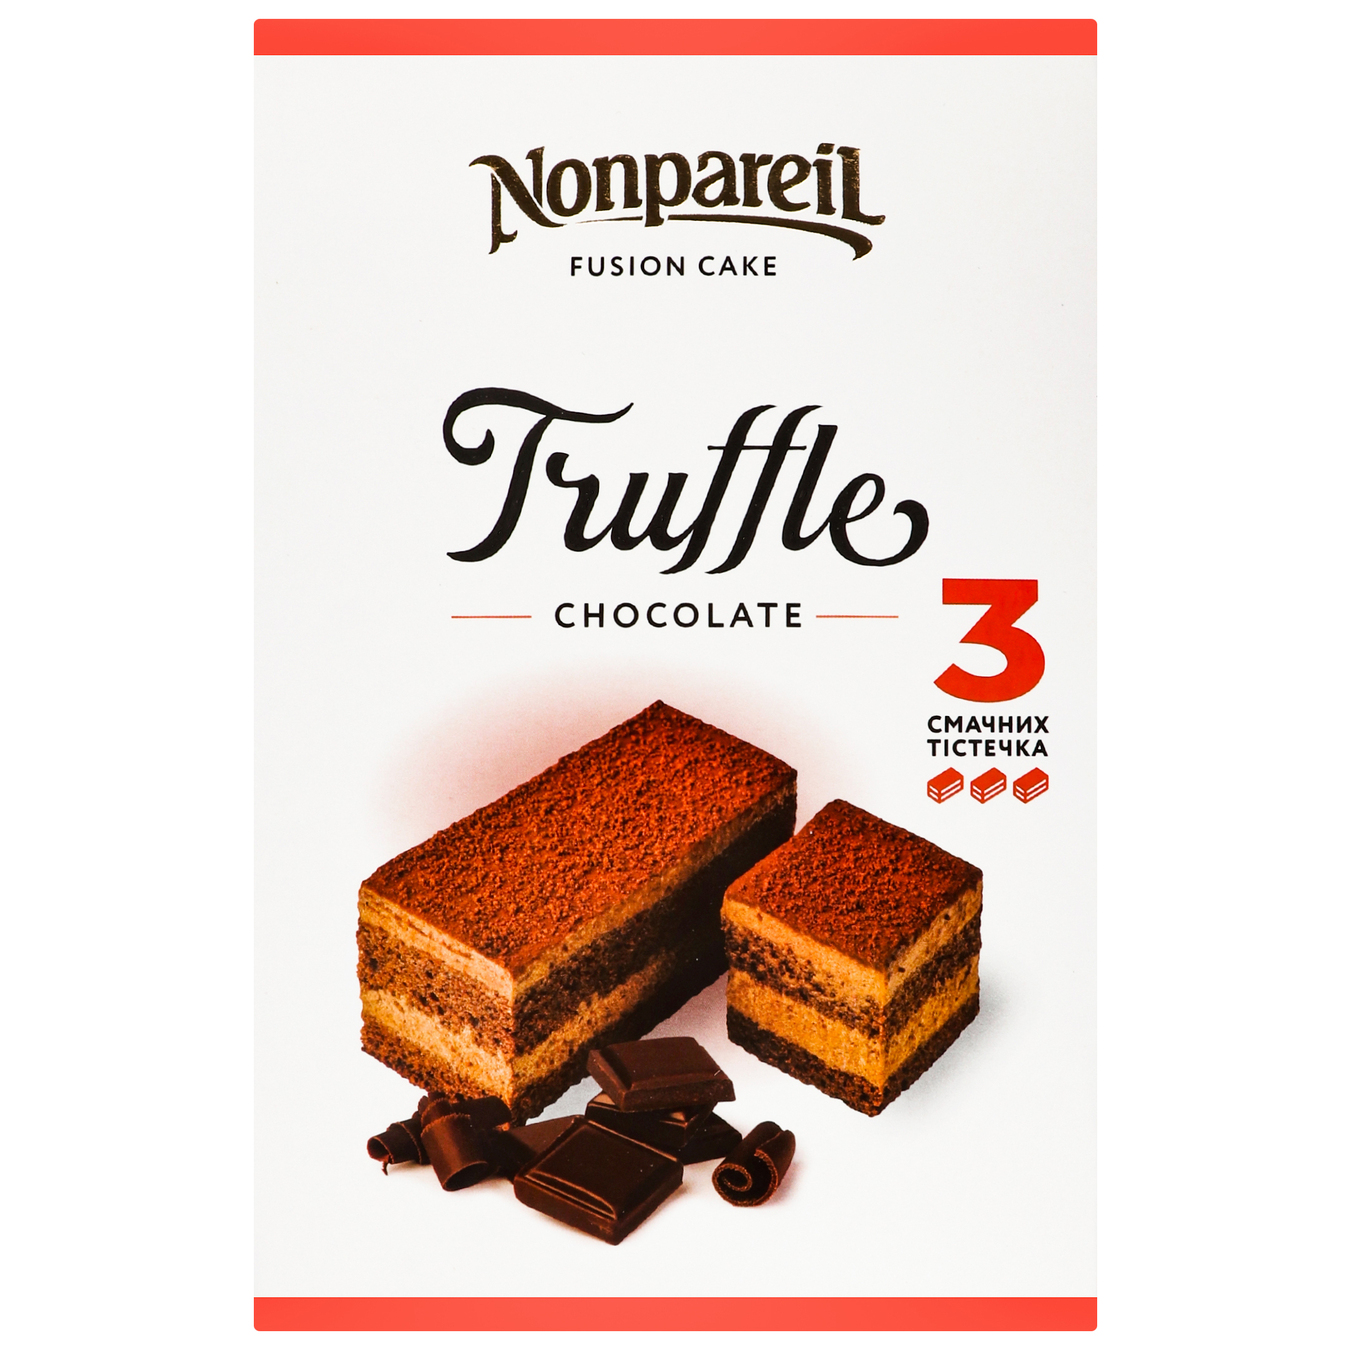 Nonpareil Truffle Cake 230g